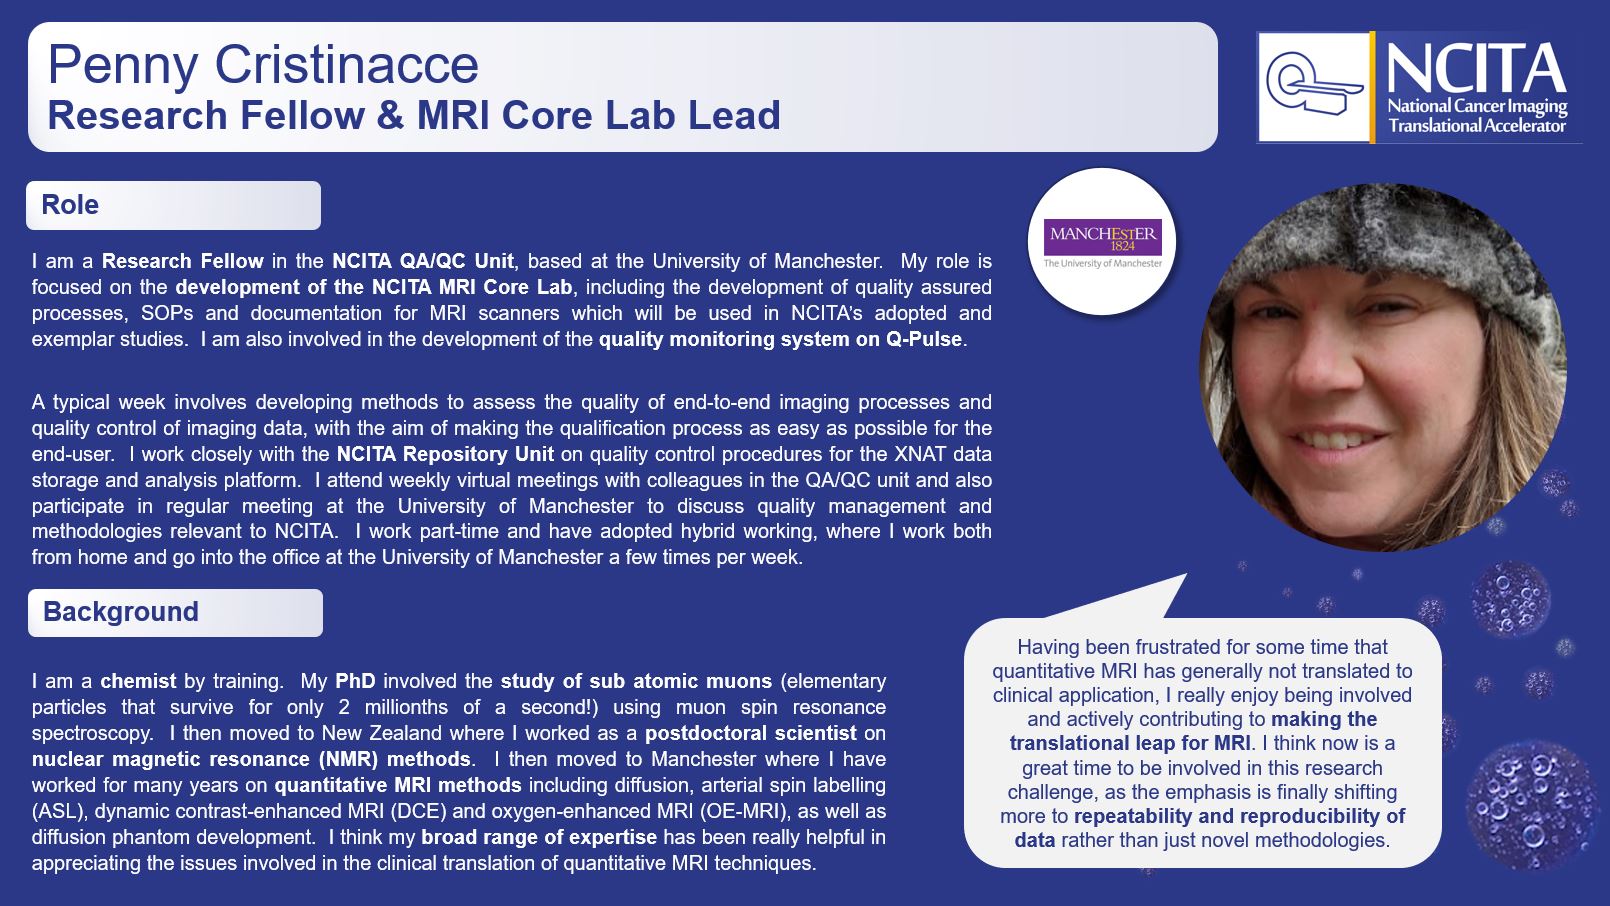 Penny Cristinacce - NCITA Research Fellow and MR Core Lab lead